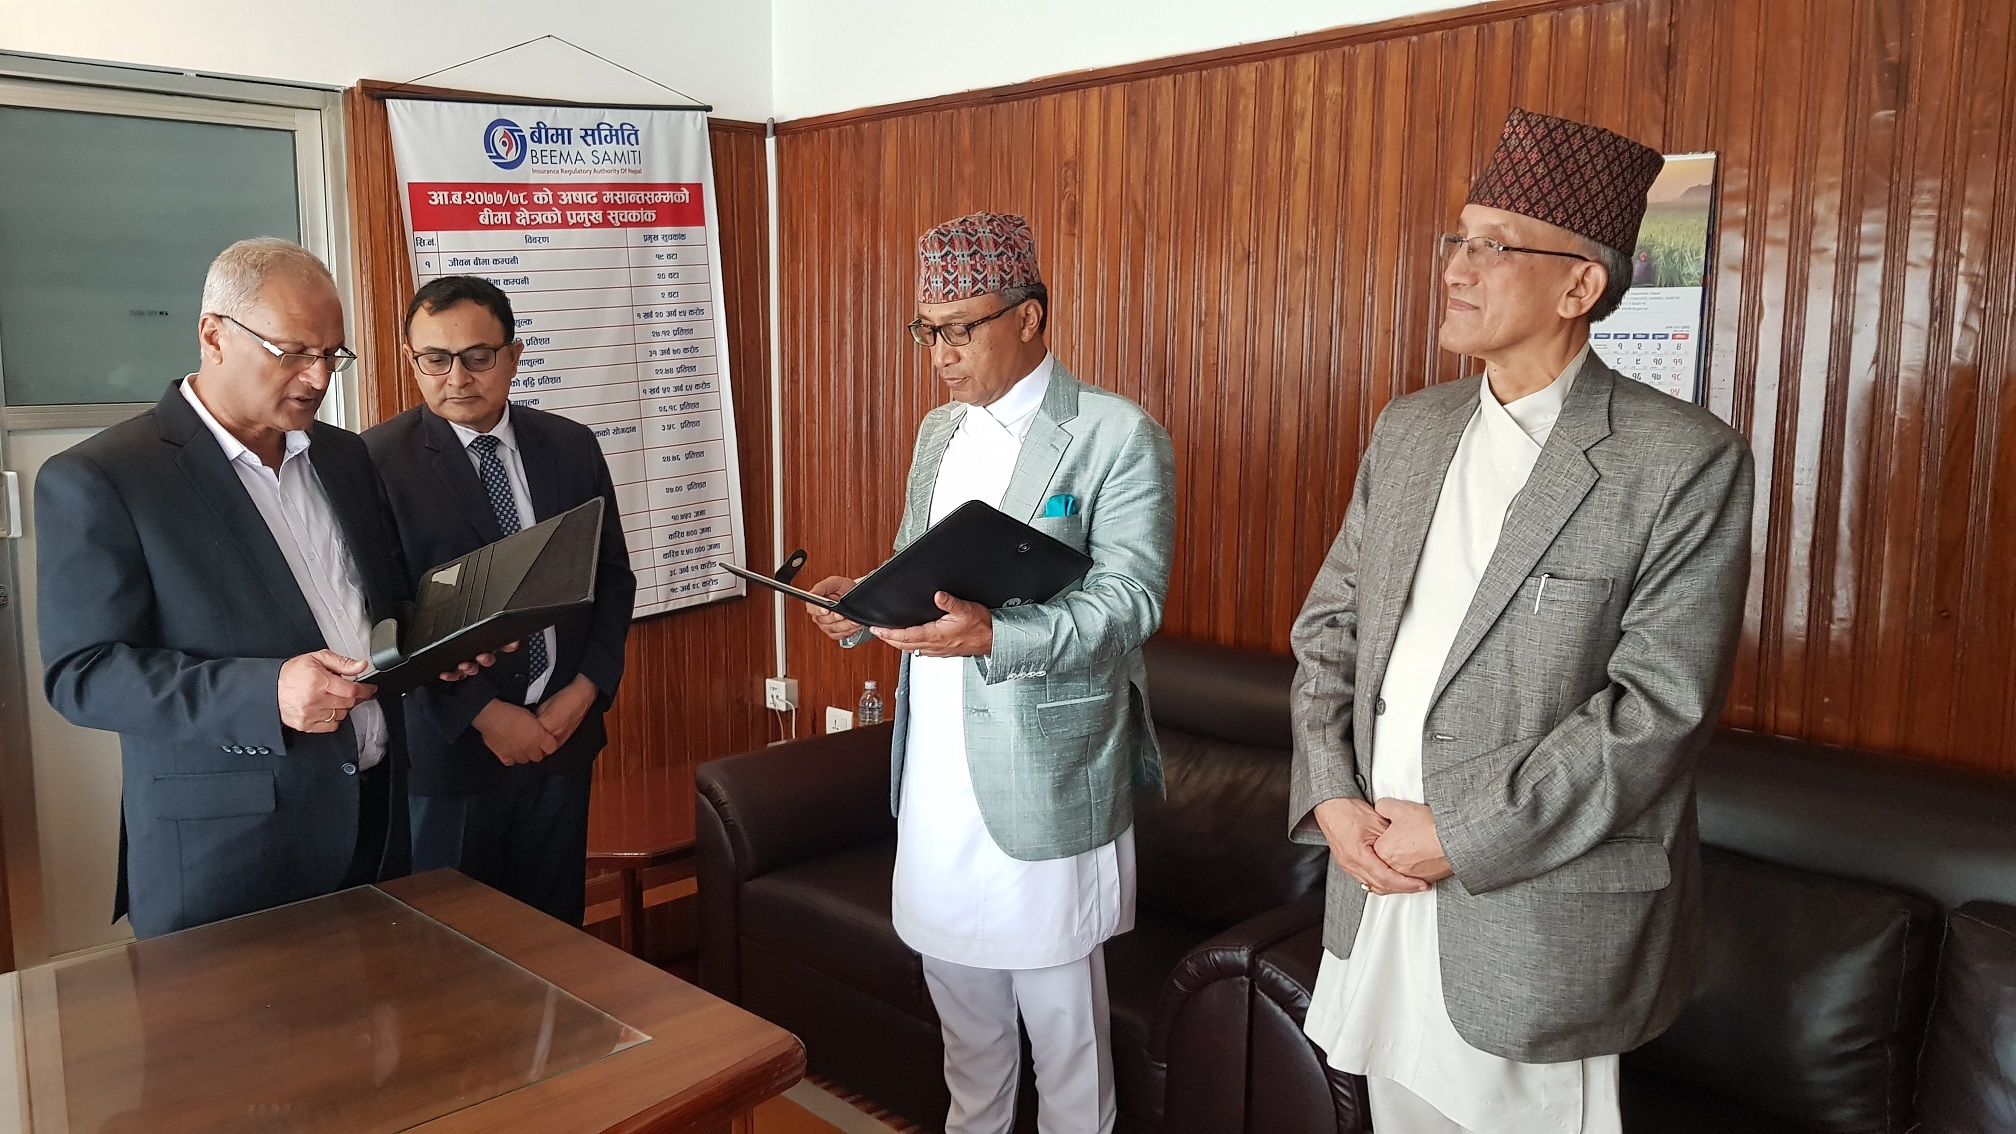 लुम्बिनी जनरलको अध्यक्षमा मनोहर दास मुल नियुक्त, समितिका अध्यक्ष सँग लिए सपथ